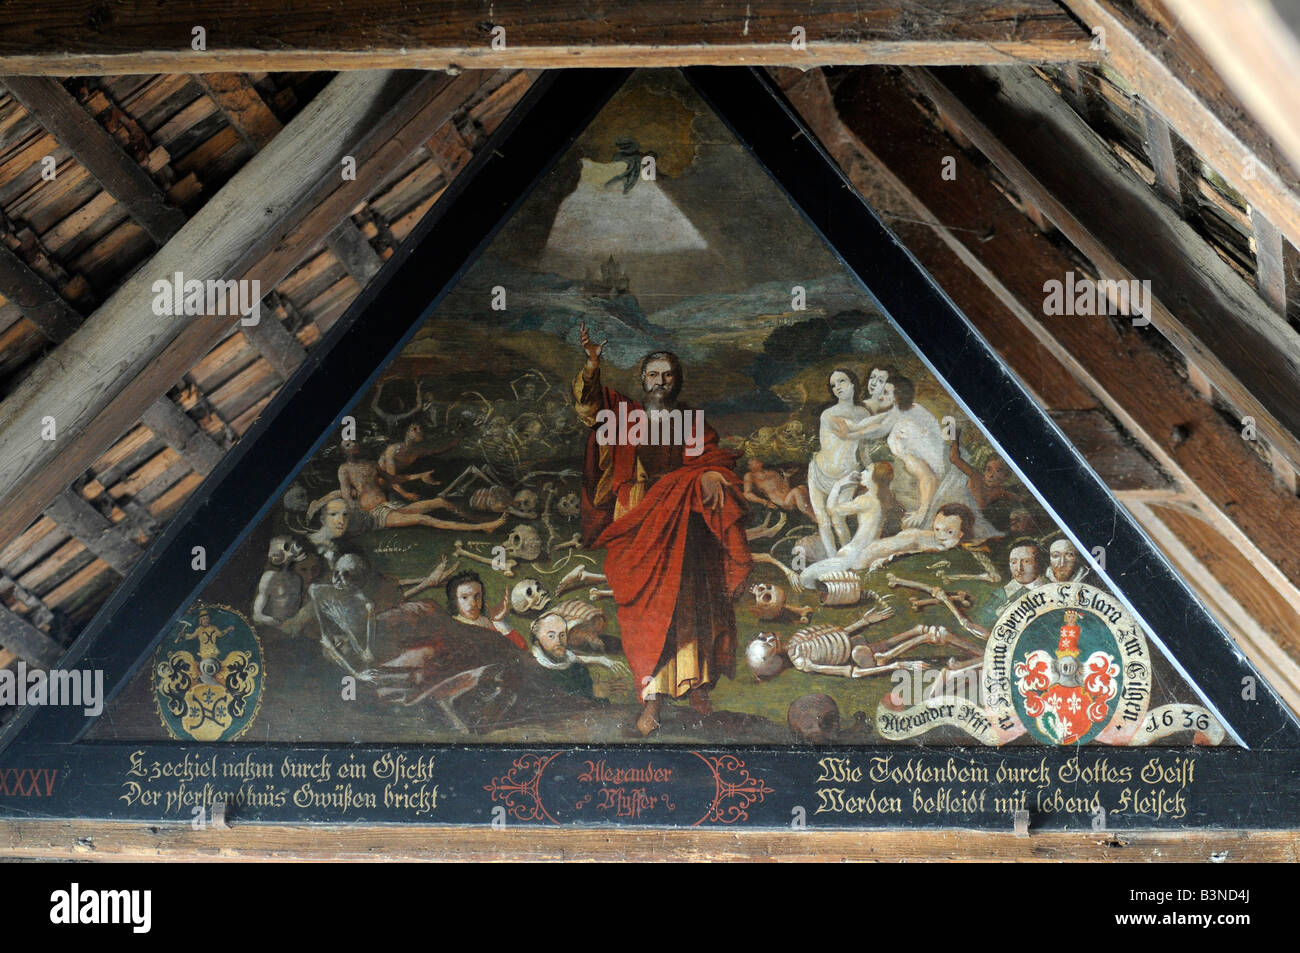 Eine grafische Beschreibung des Todes und religiöse Motive auf einem Gemälde in die hölzerne Kapellbrücke in Luzern. Stockfoto